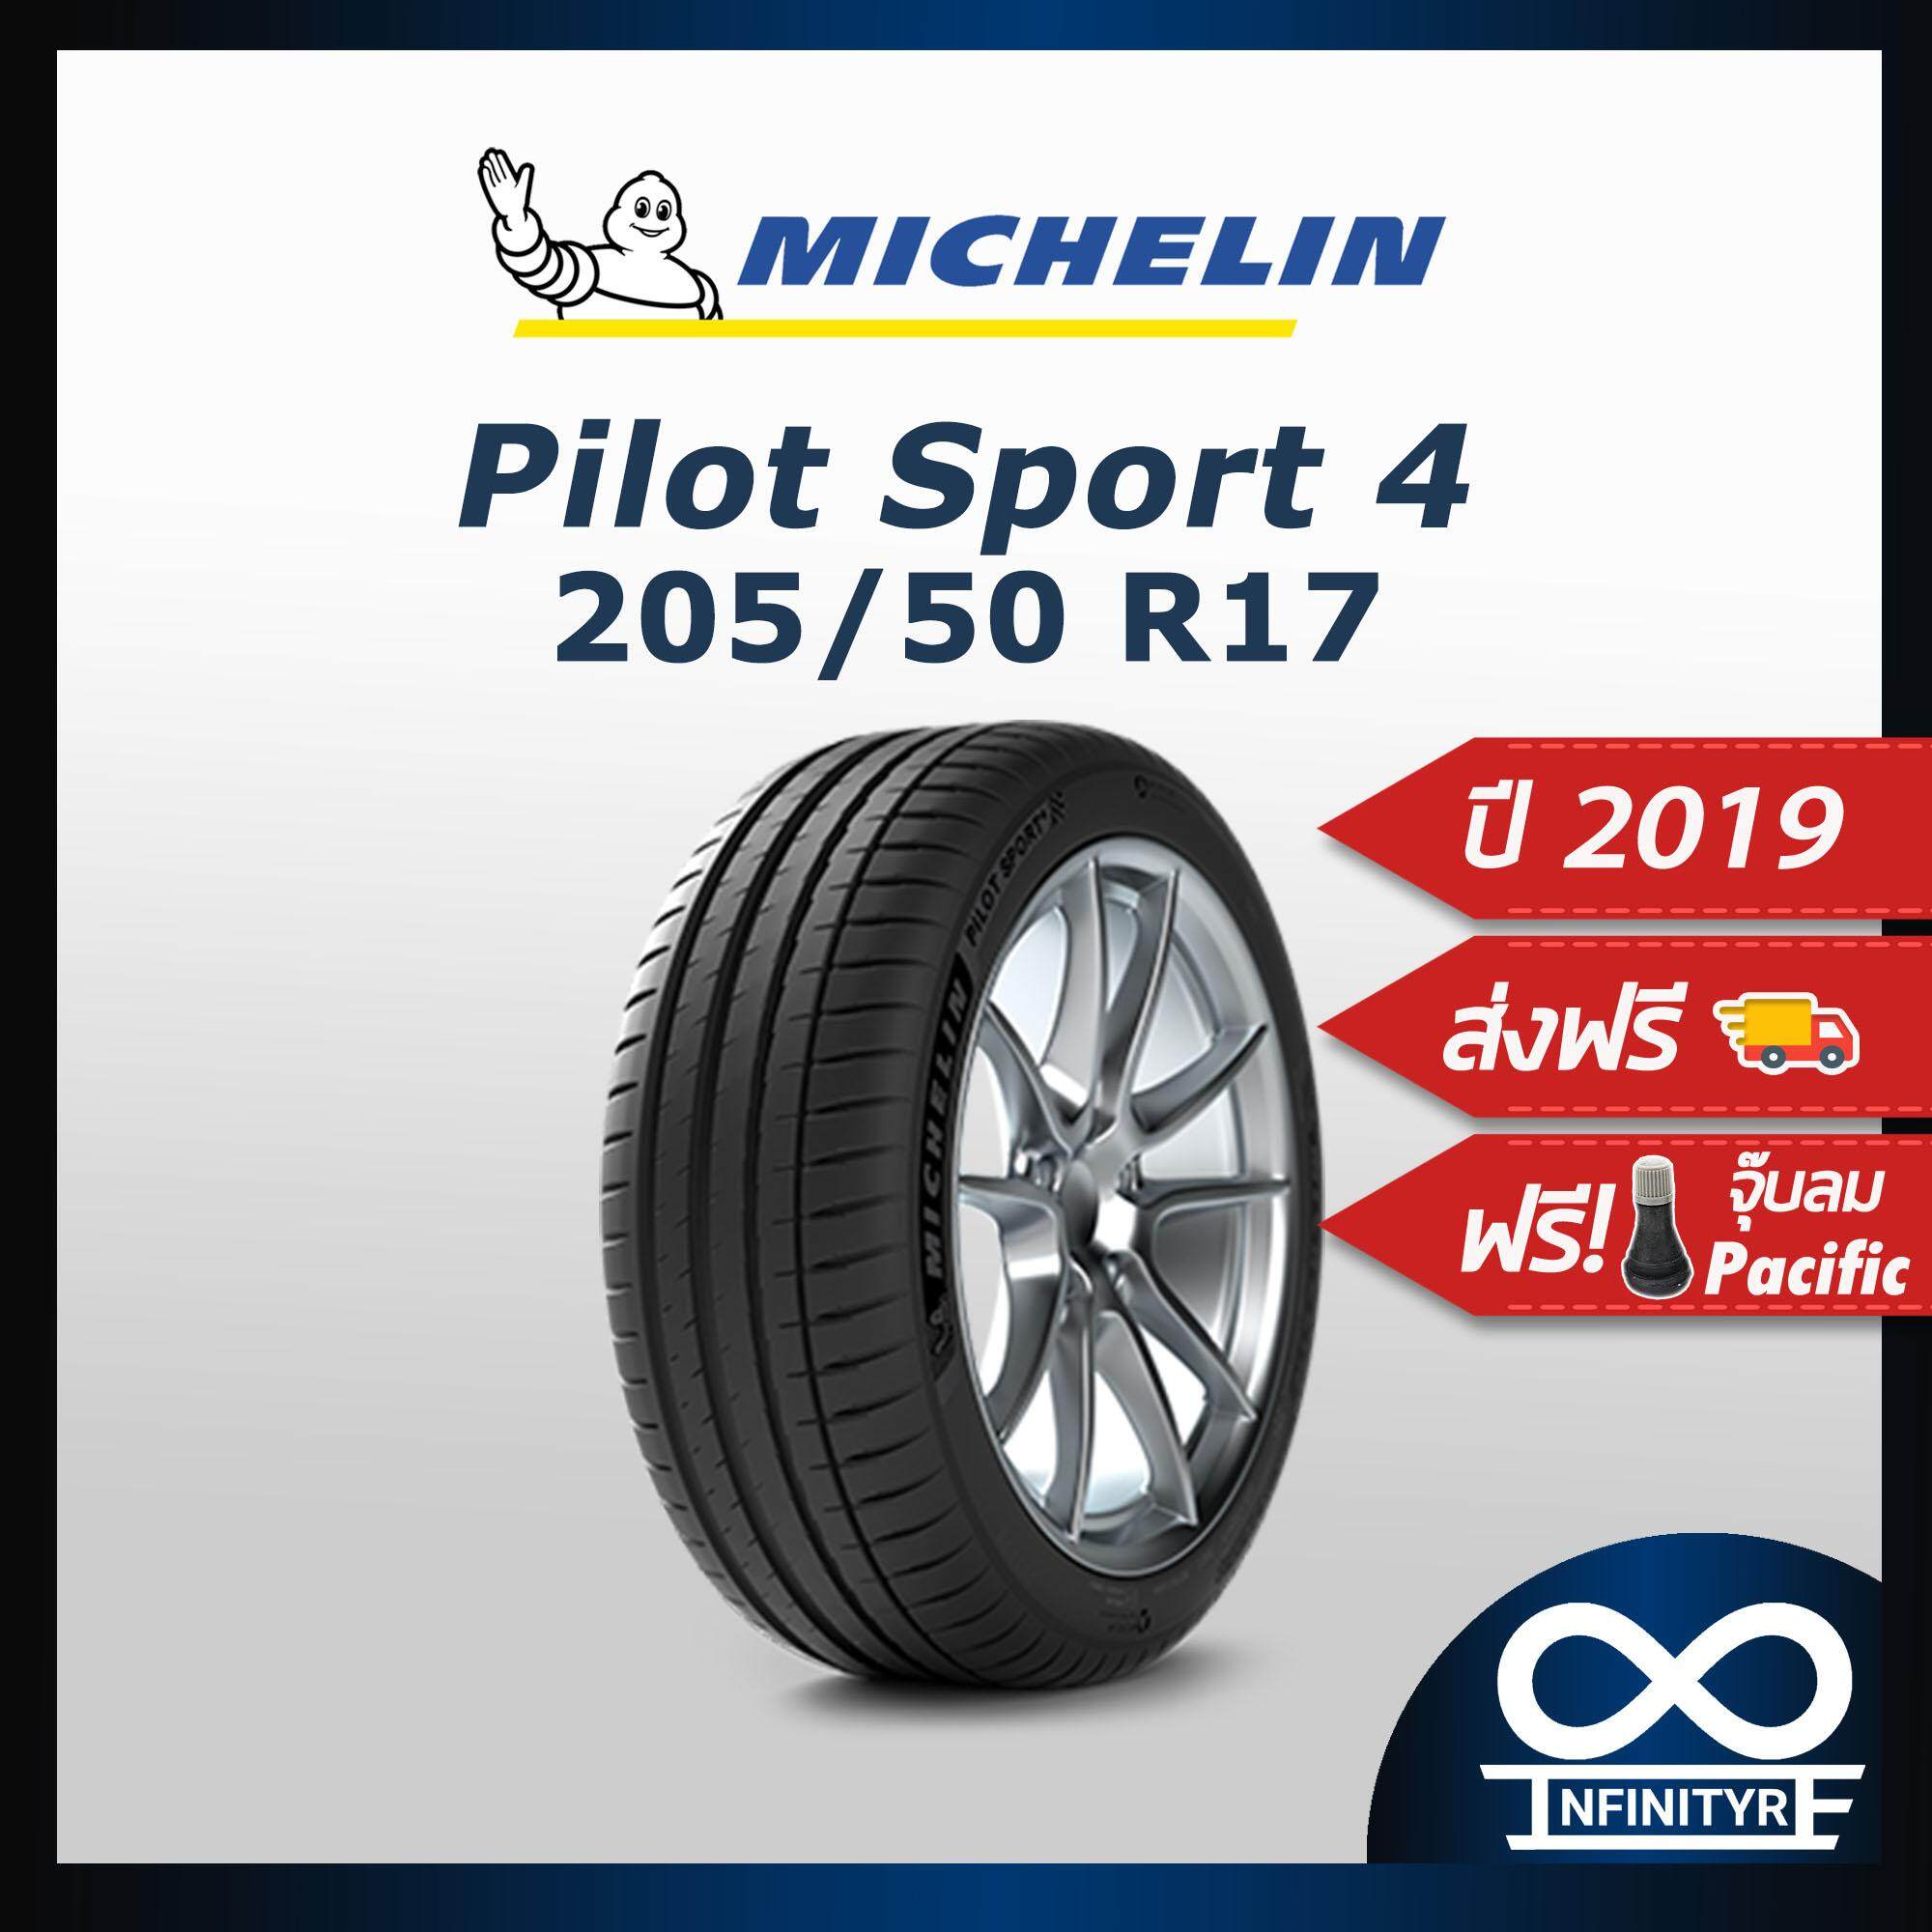 ประกันภัย รถยนต์ แบบ ผ่อน ได้ นครสวรรค์ 205/50R17 Michelin มิชลิน รุ่น Pilot Sport4 (ปี2019) ฟรี  จุ๊บลมPacific เกรดพรีเมี่ยม